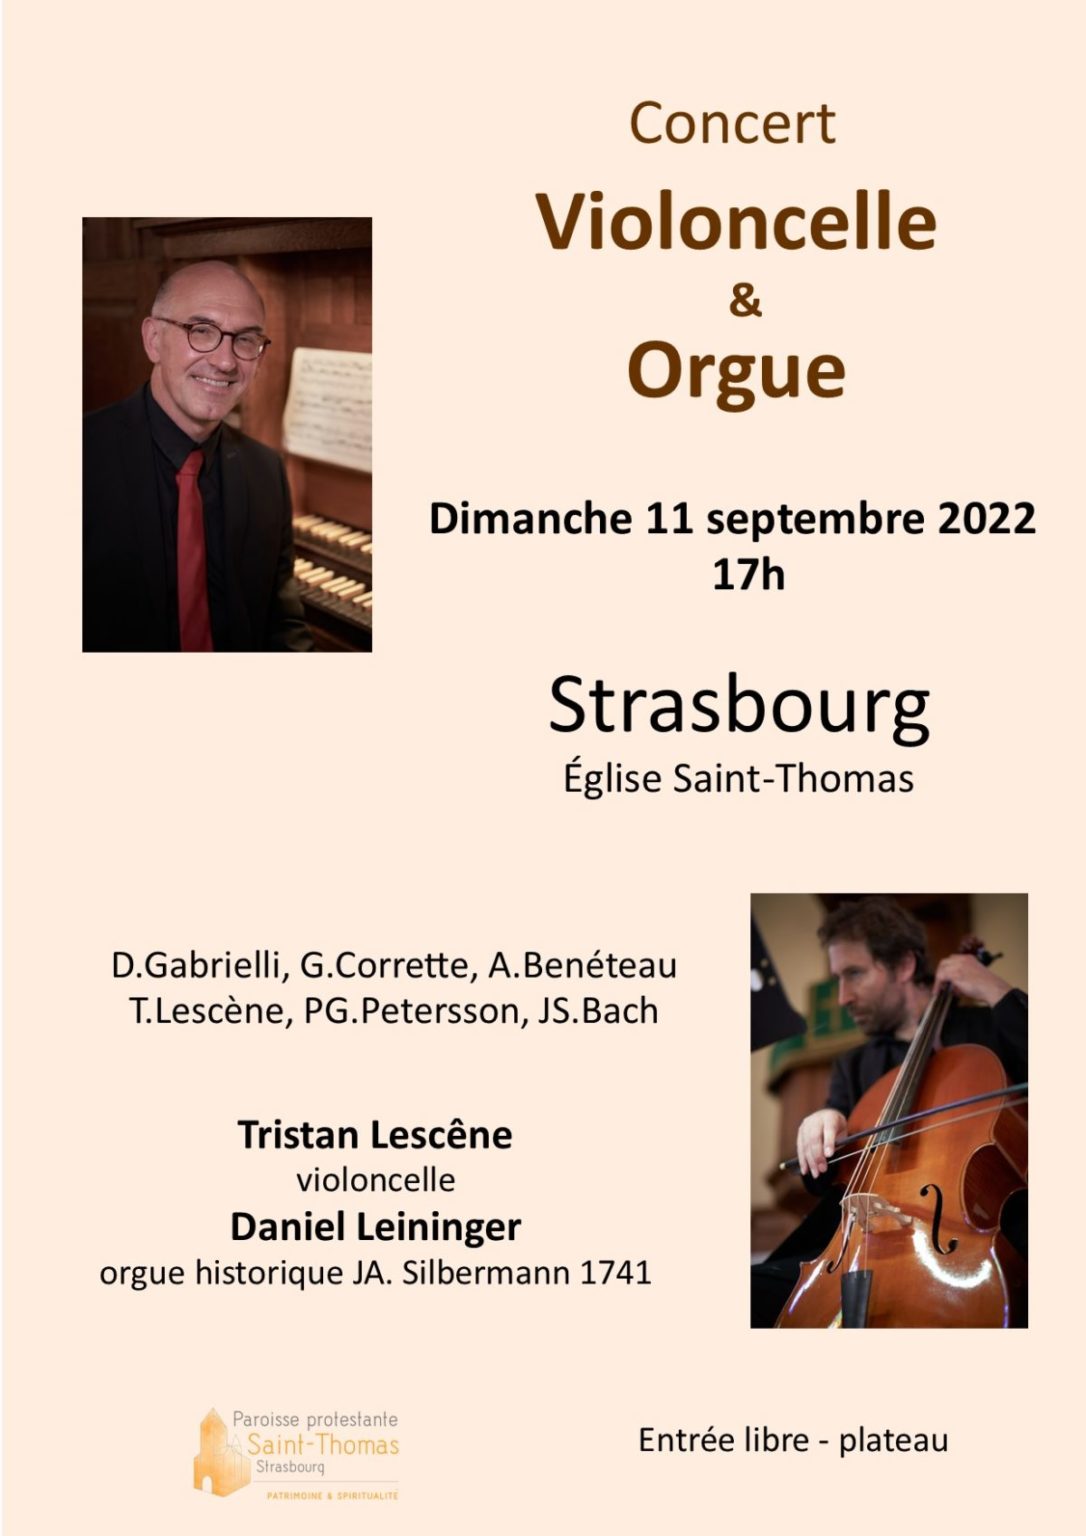 Concert violoncelle & orgue